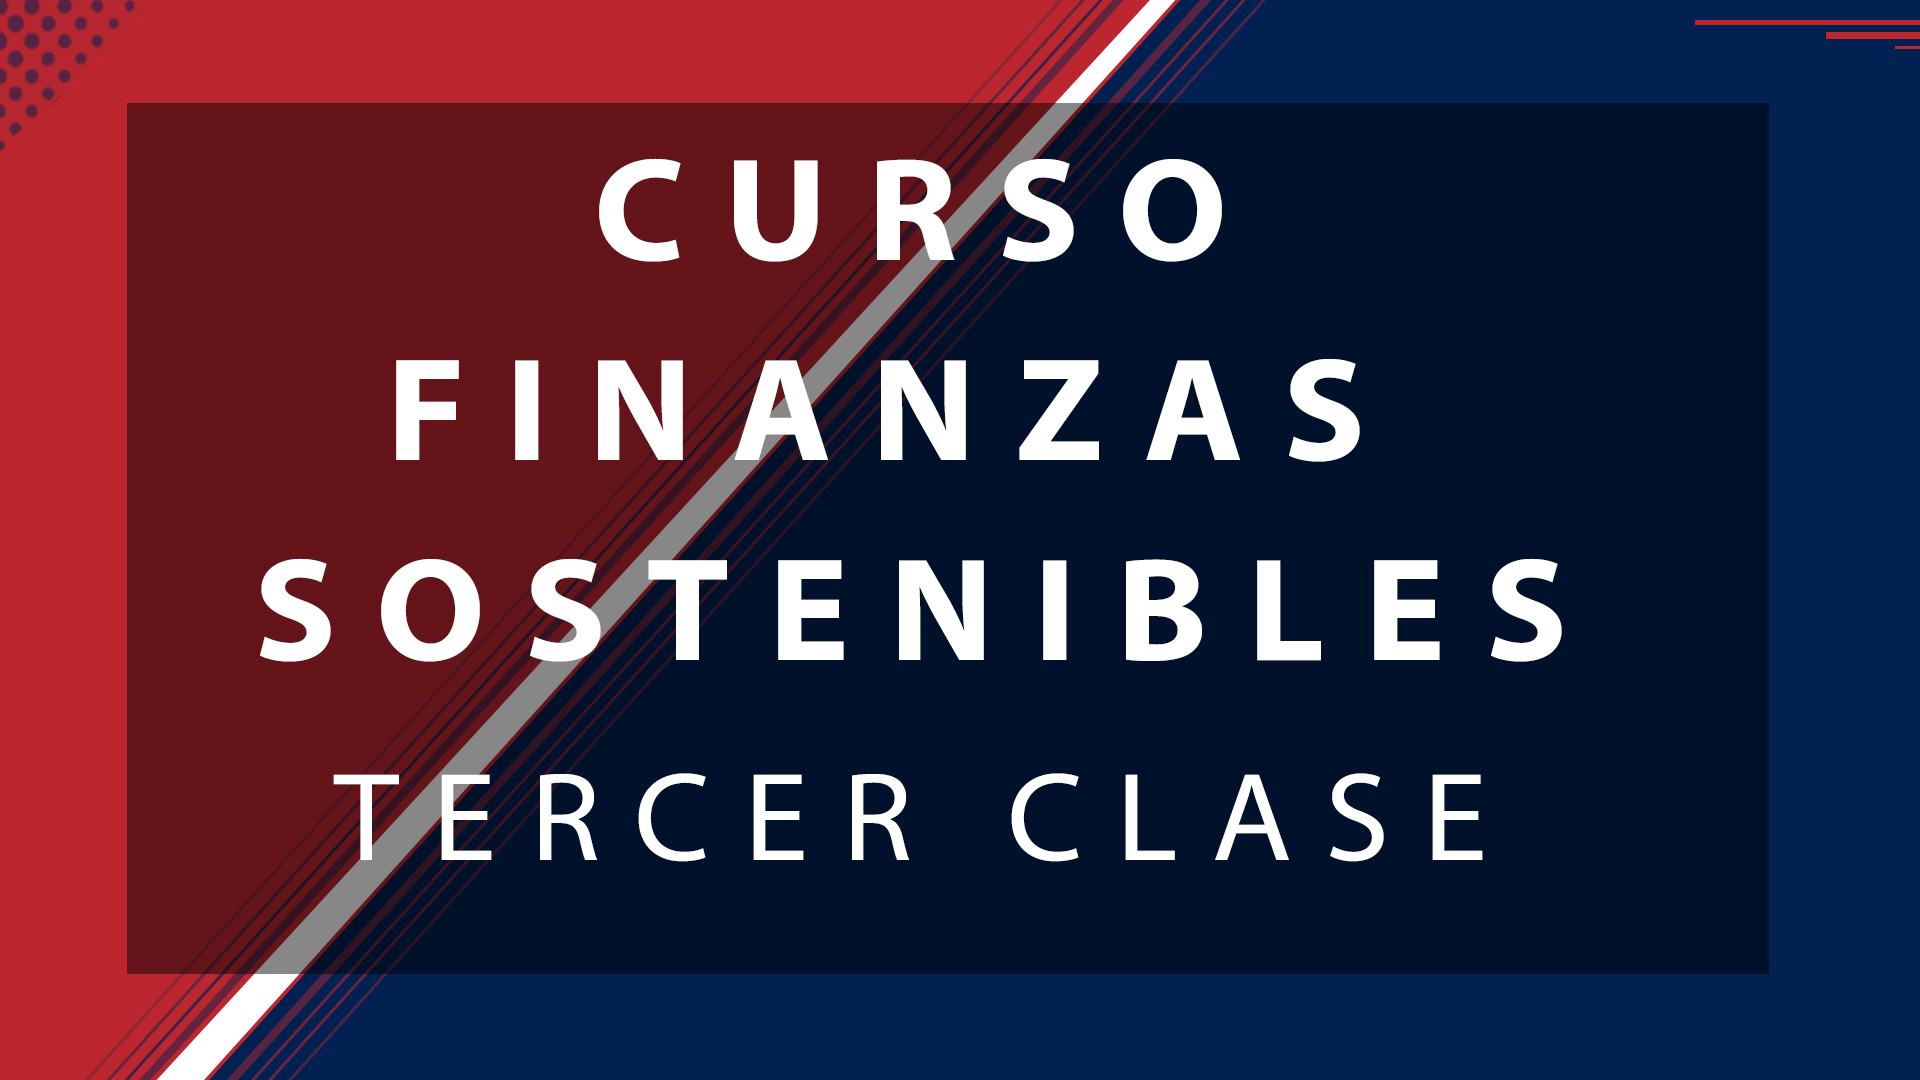 TERCER CLASE CURSO FINANZAS SOSTENIBLES I